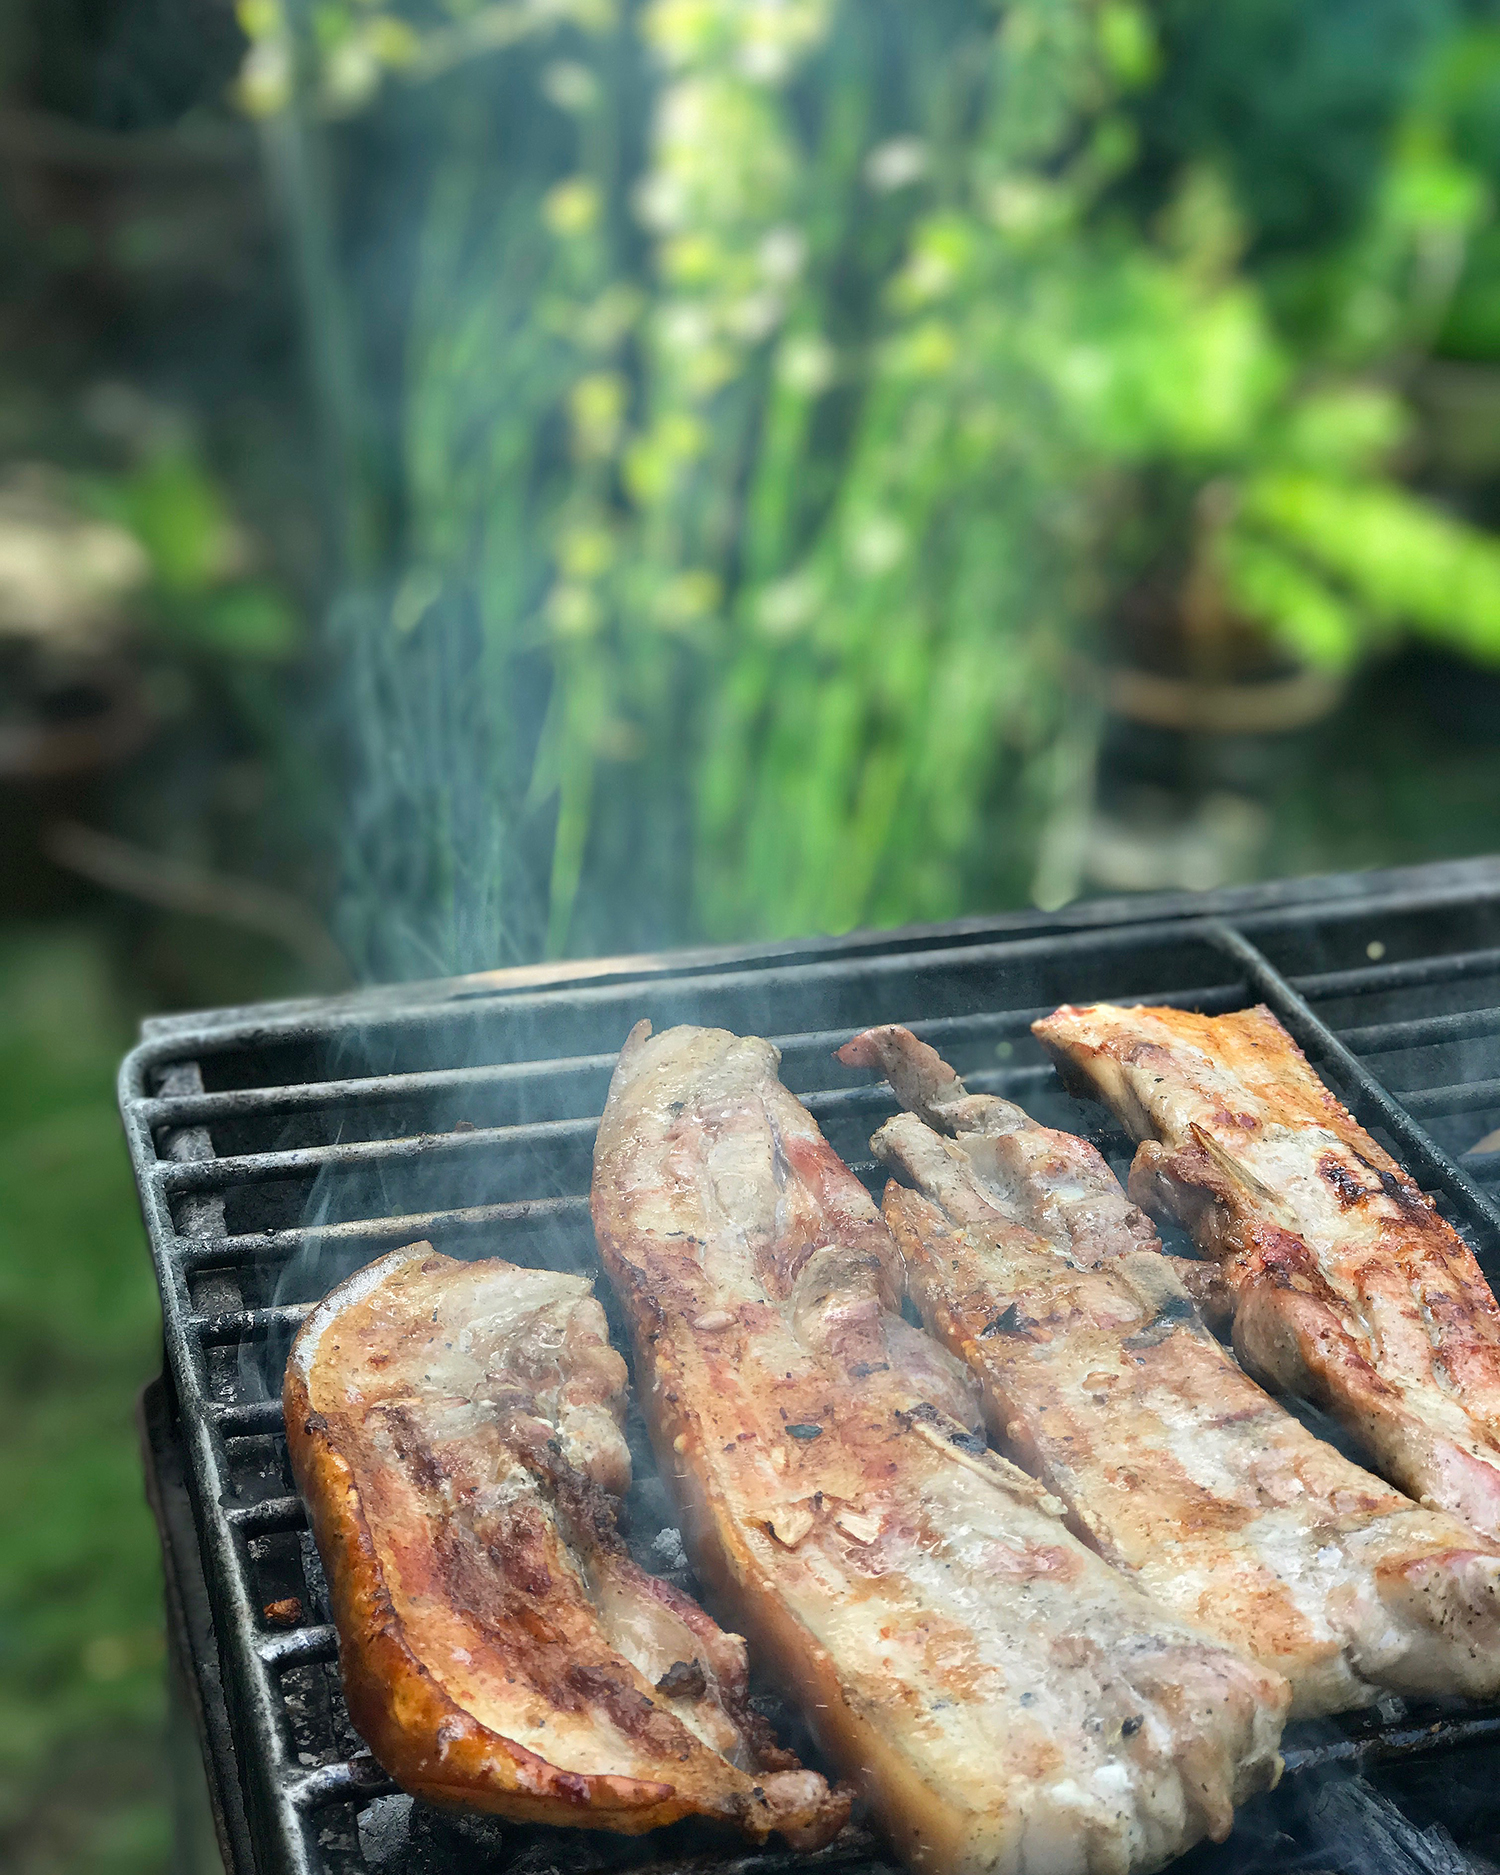 Pork barbecue